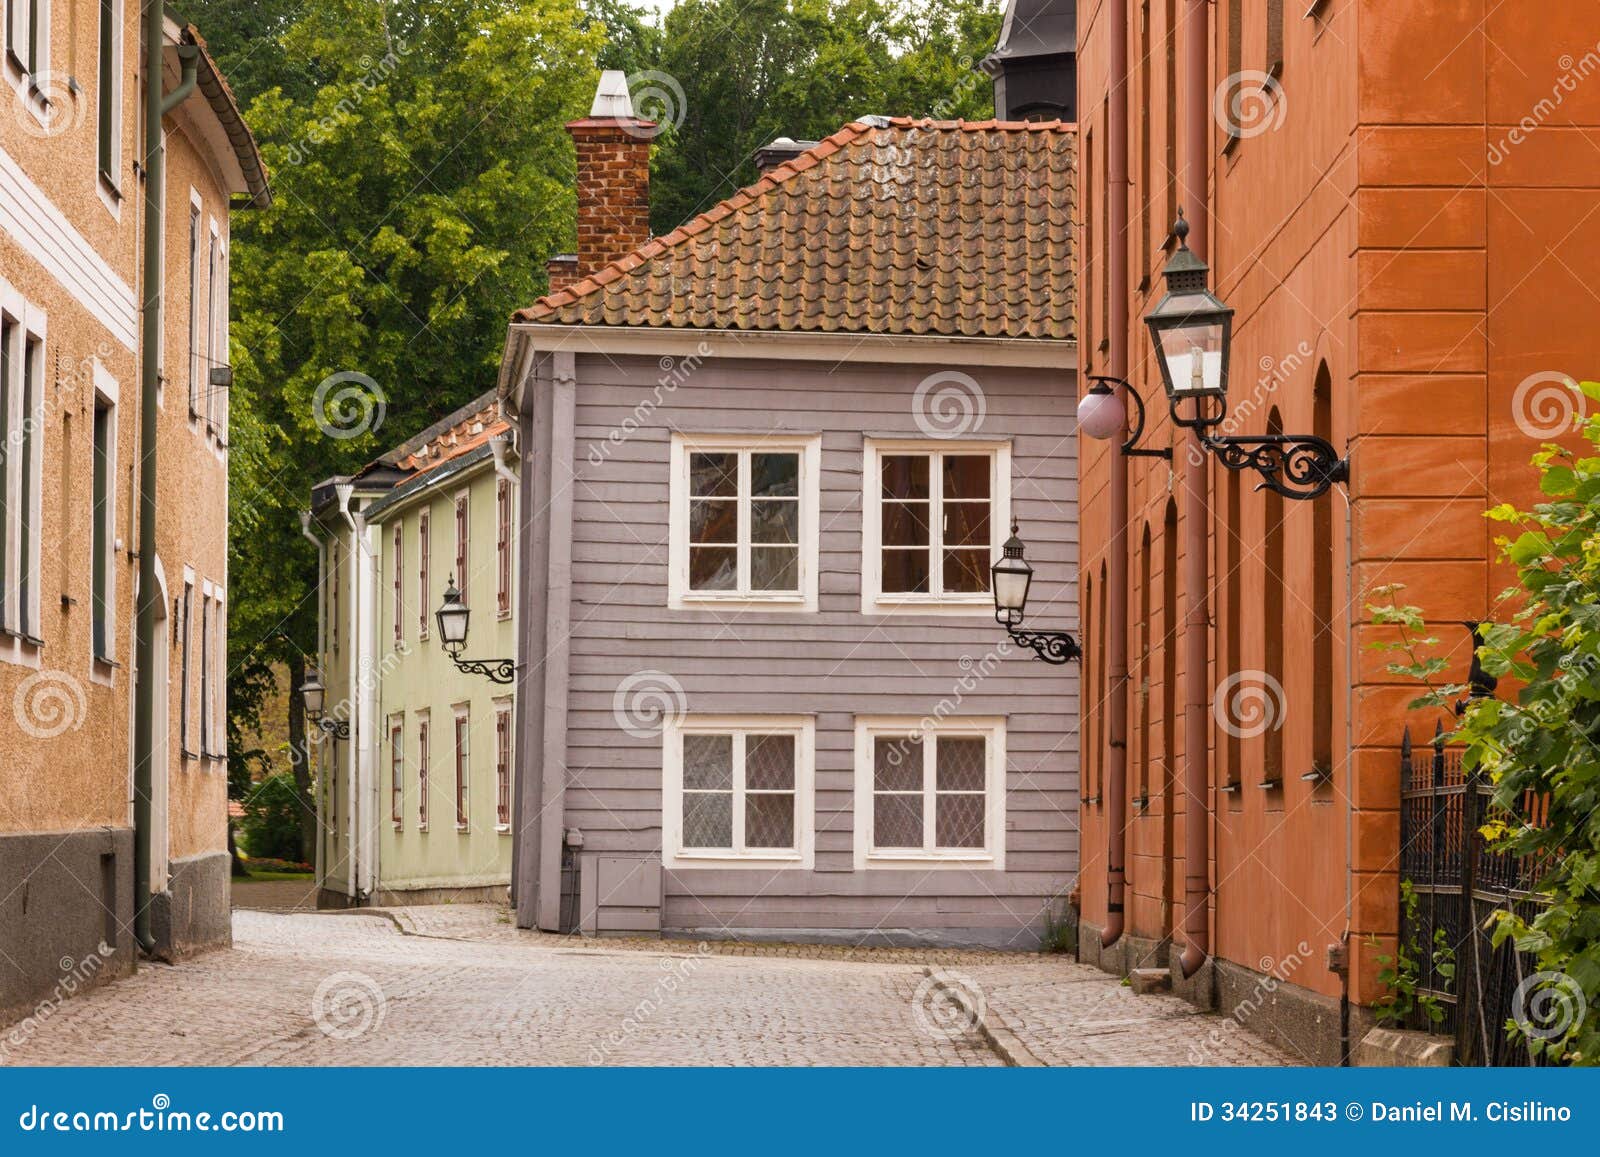 picturesque corner. vadstena. sweden